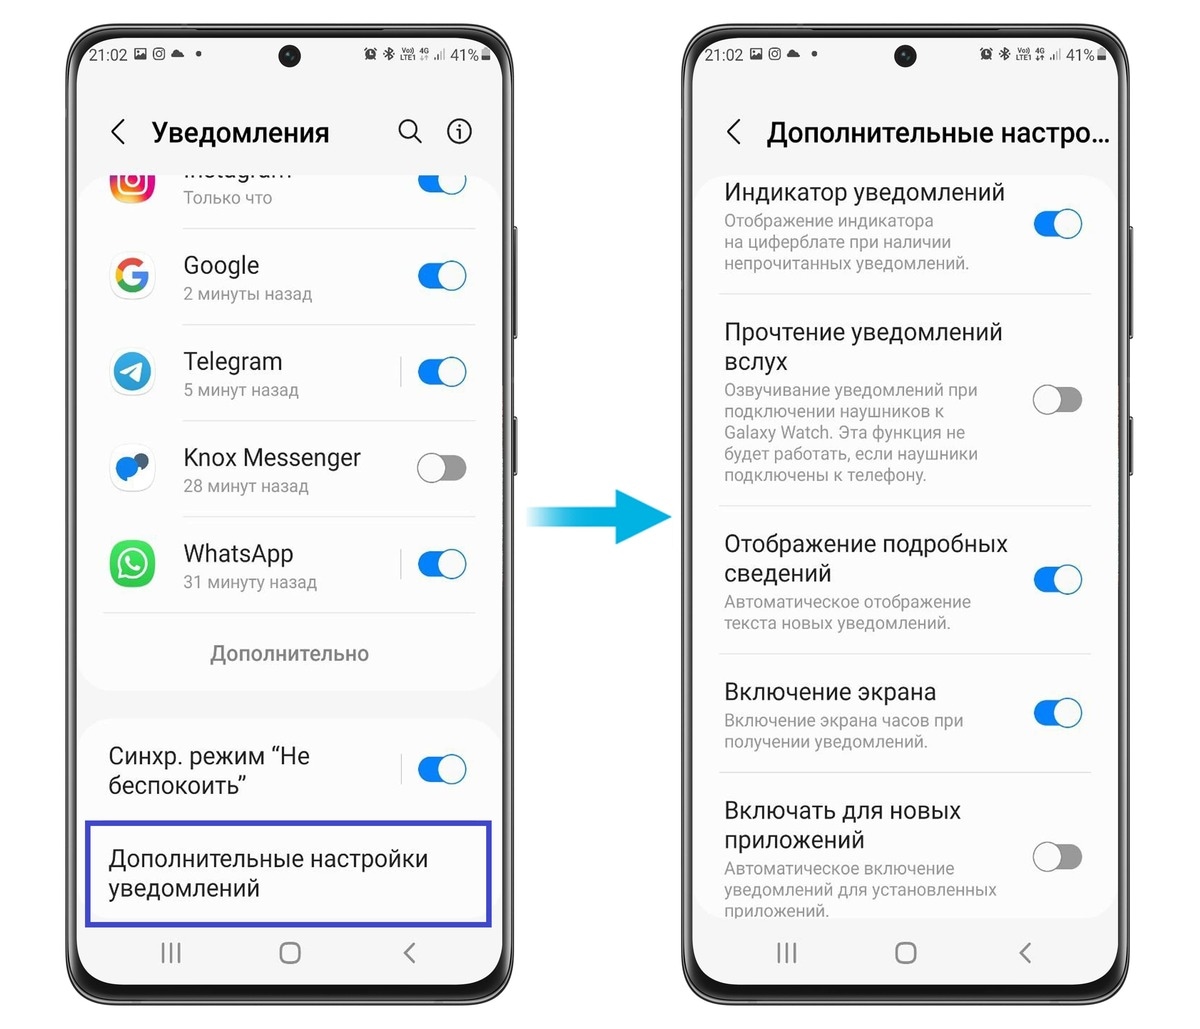 Как установить телеграмм на русский язык на андроиде фото 100